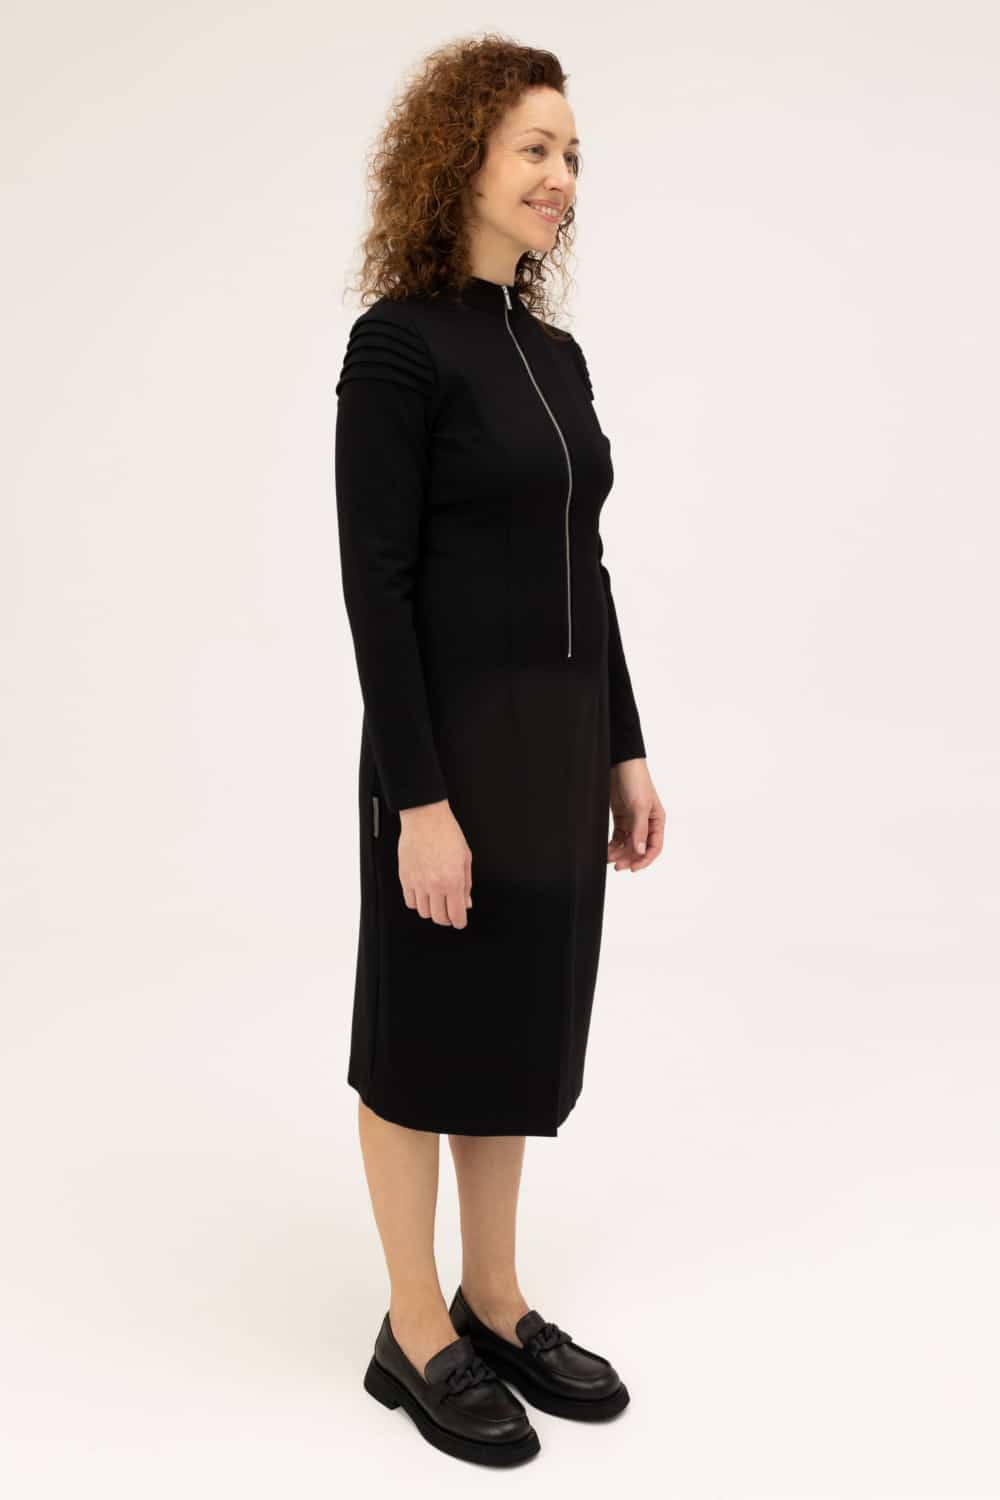 juodos spalvos smart casual suknelė